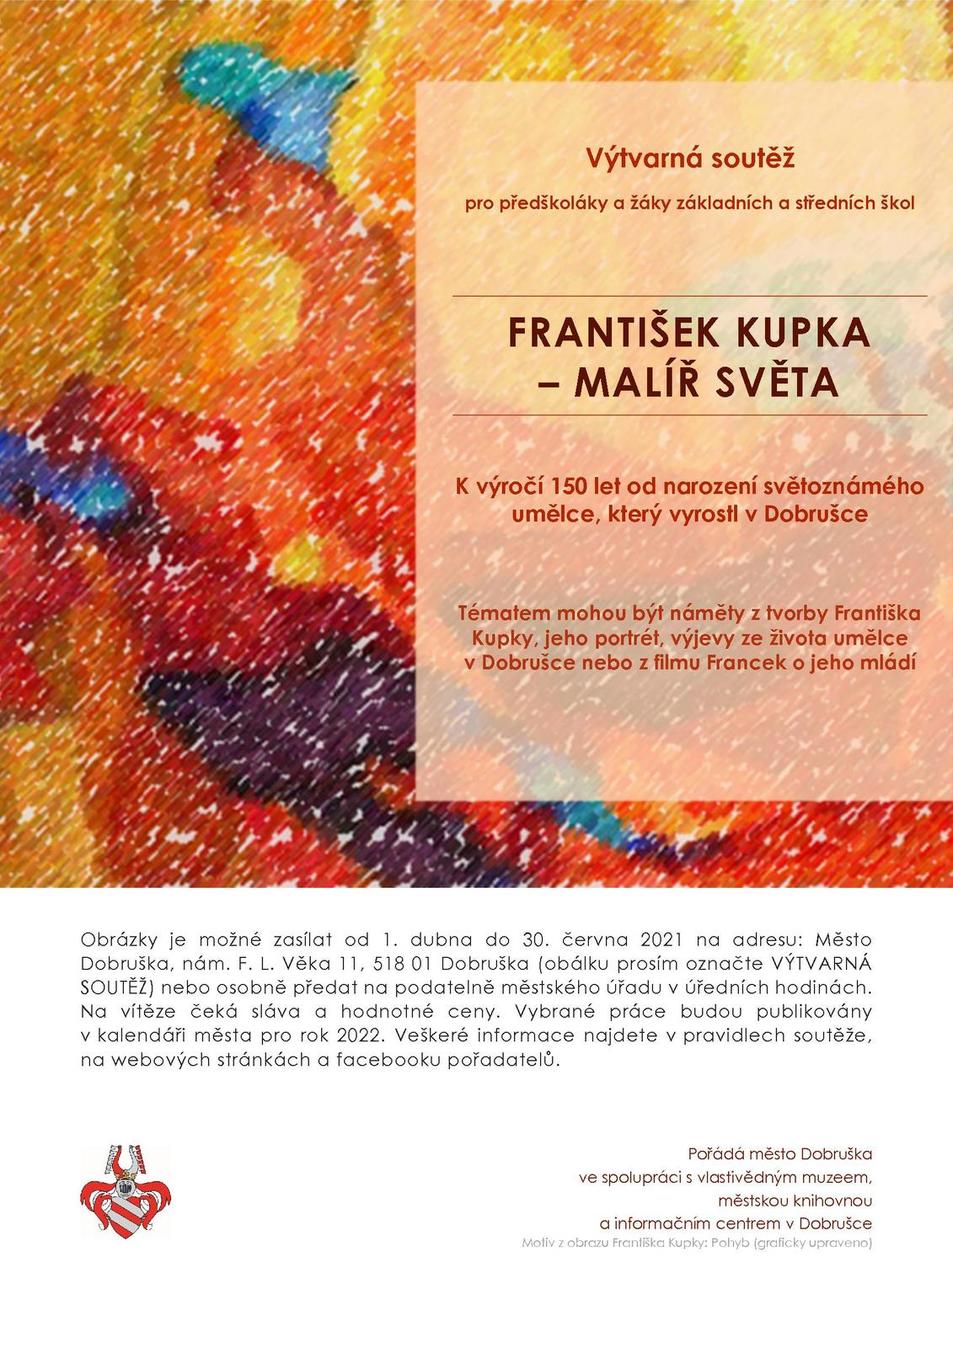 Výtvarná soutěž František Kupka - malíř světa, plakát jpg.jpg